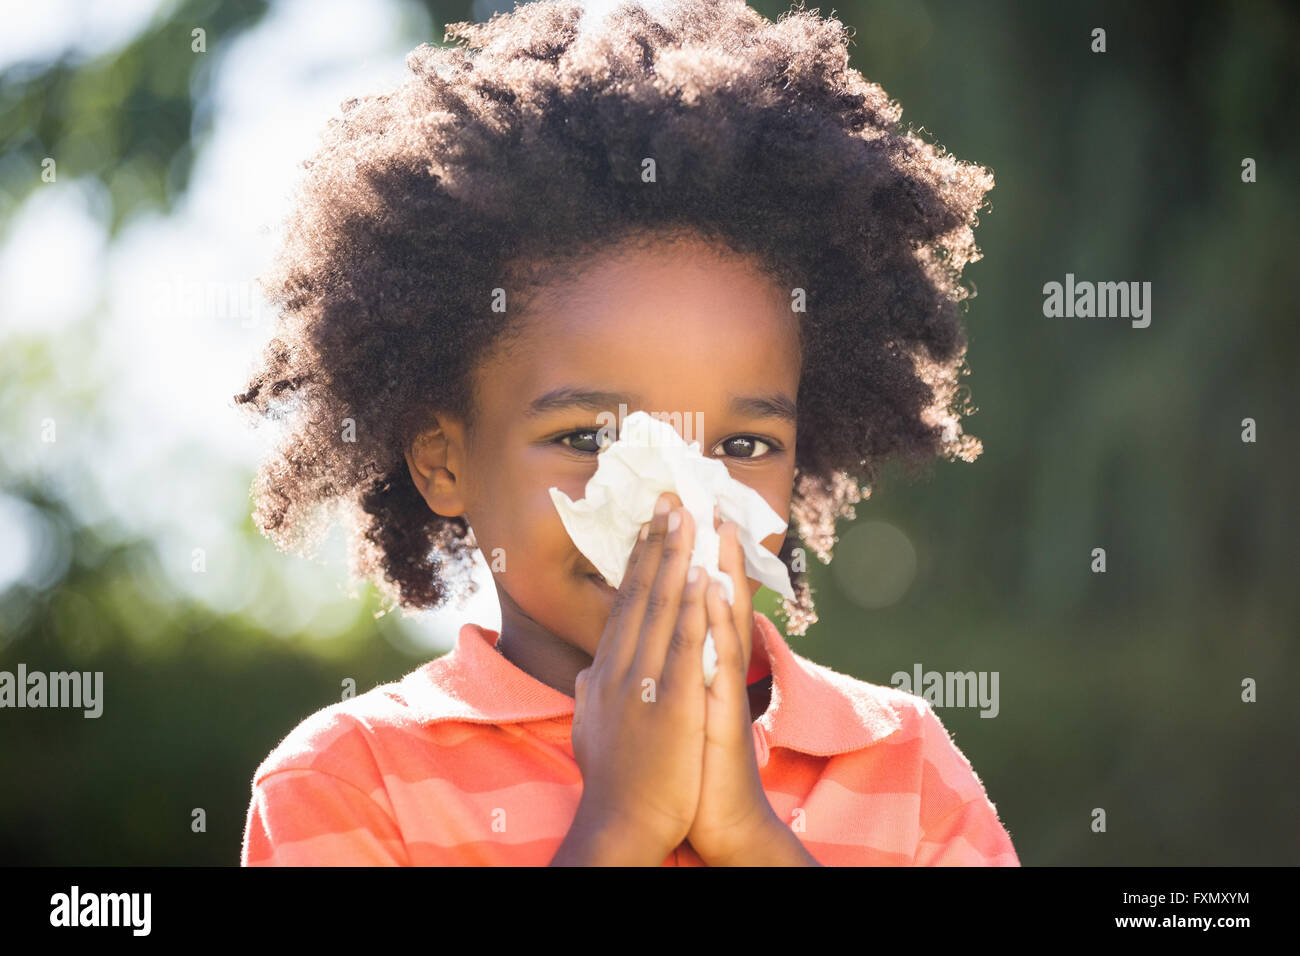 Enfant de race mixte soufflant son nez Banque D'Images